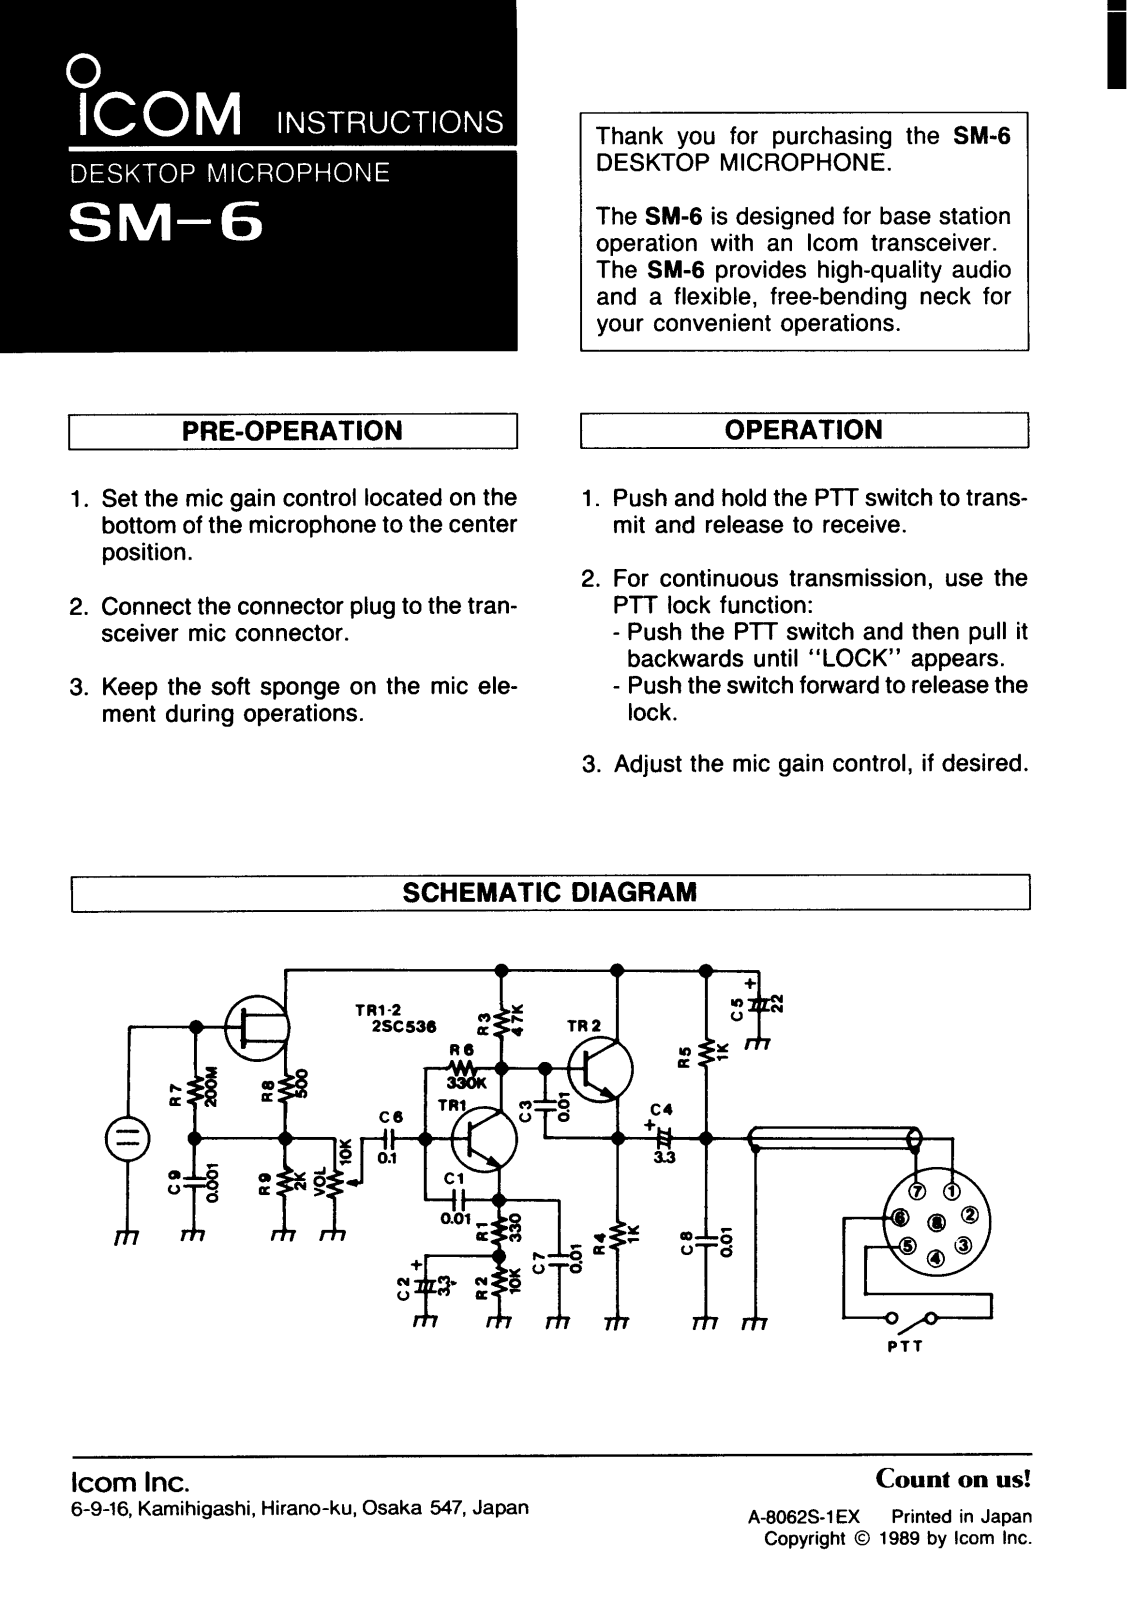 Icom SM-6 Manual